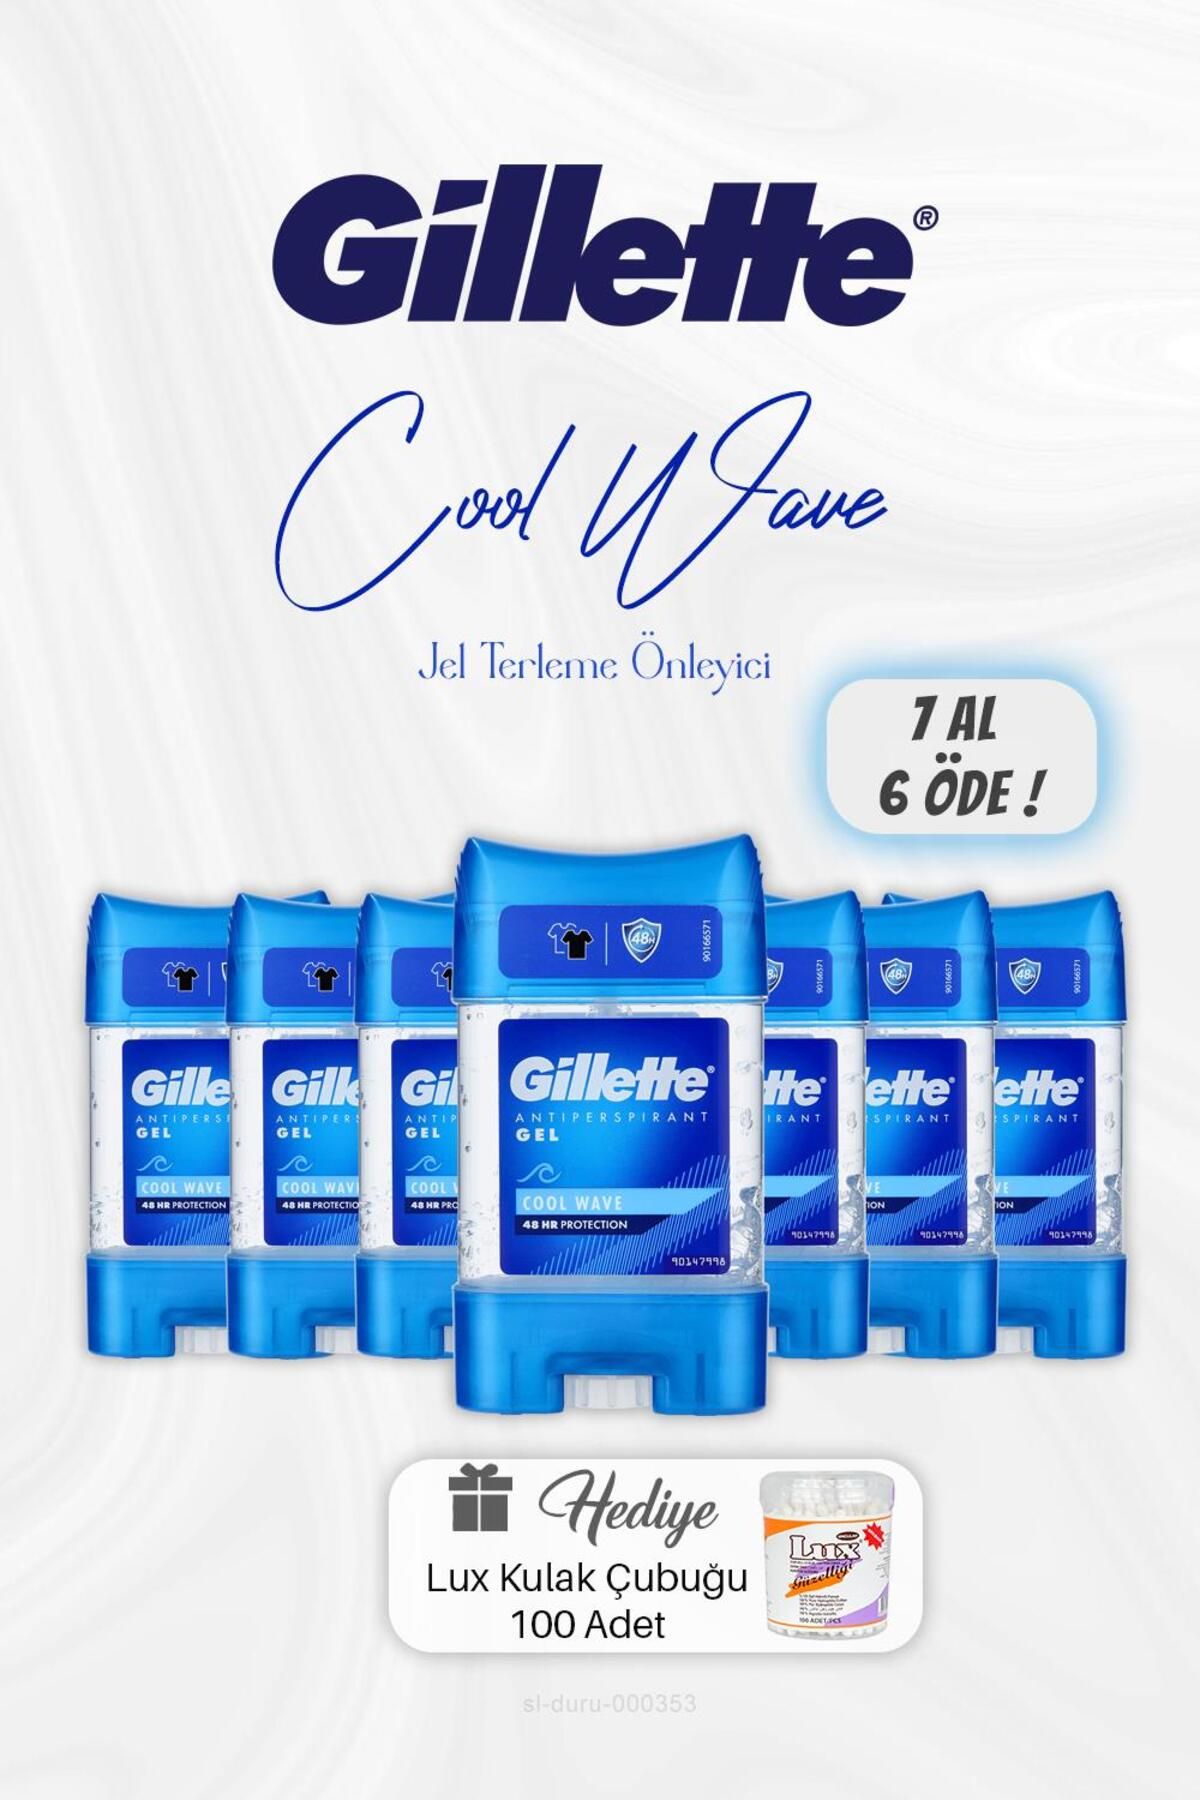 Gillette 7 AL 6 ÖDE Gillette Jel Cool Wave Terleme Önleyici 70 ml, Kulak Çubuğu Hediyeli